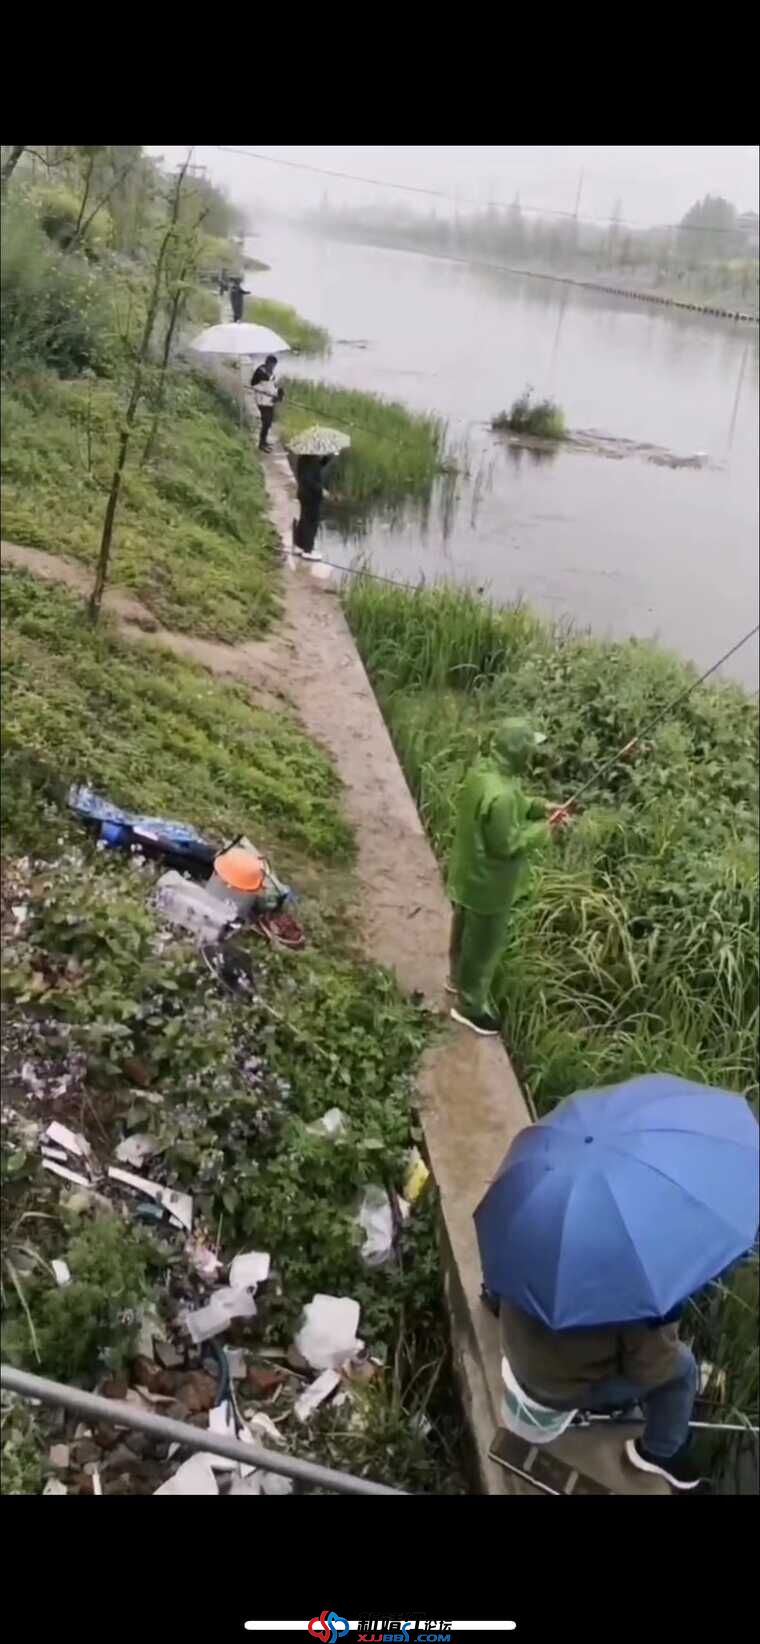 靖江哪儿有这种适合钓鱼的河道